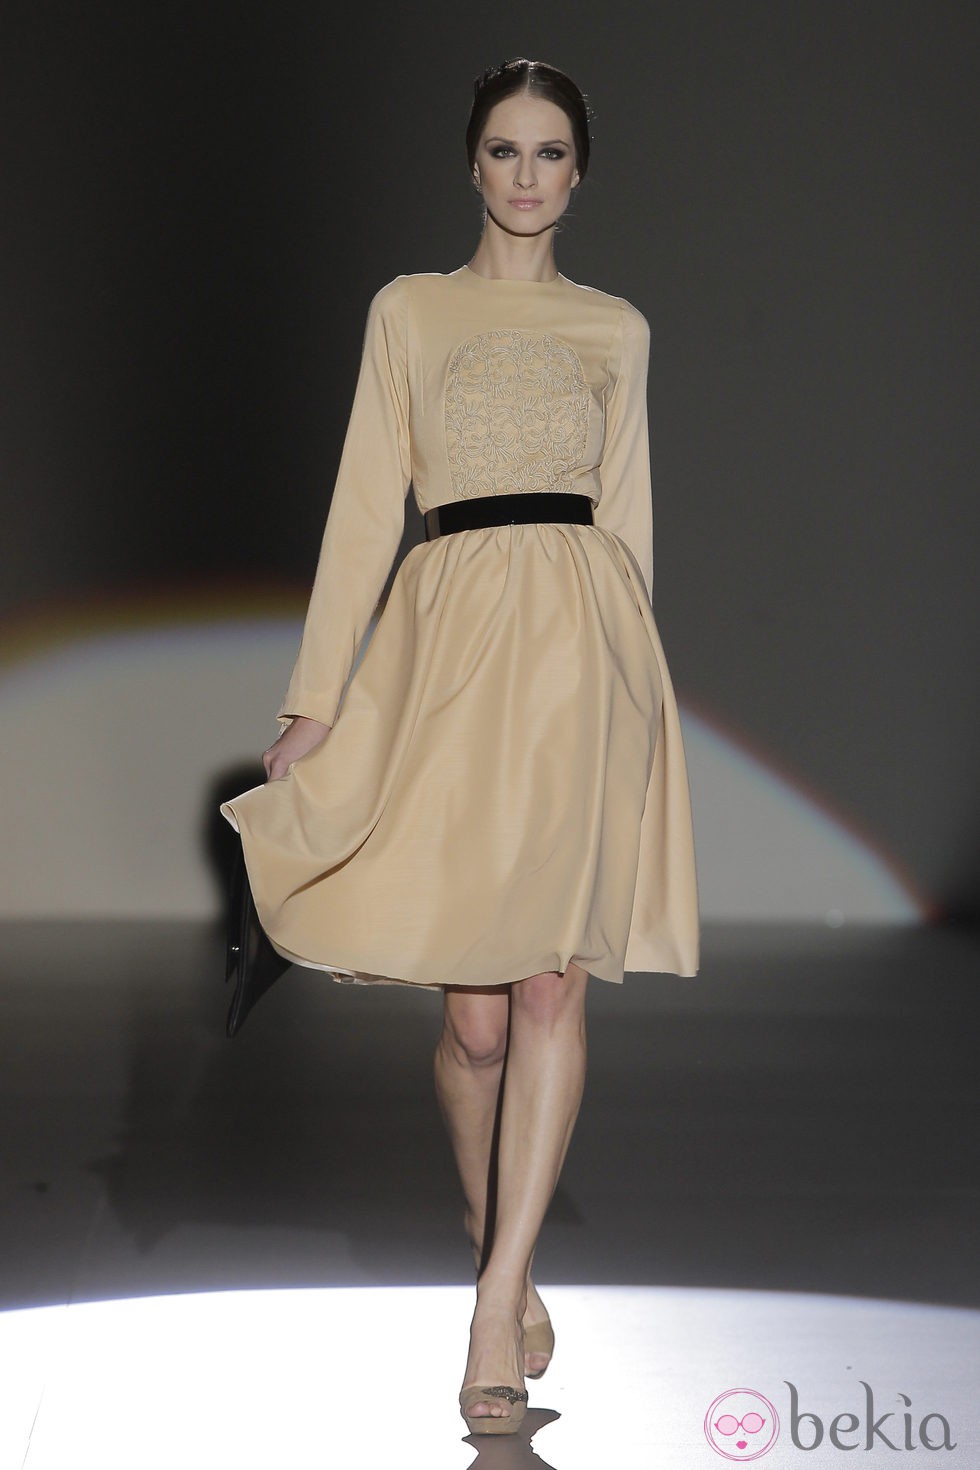 Vestido beige de la colección otoño/invierno 2013/2014 de Juana Martín en Madrid Fashion Week